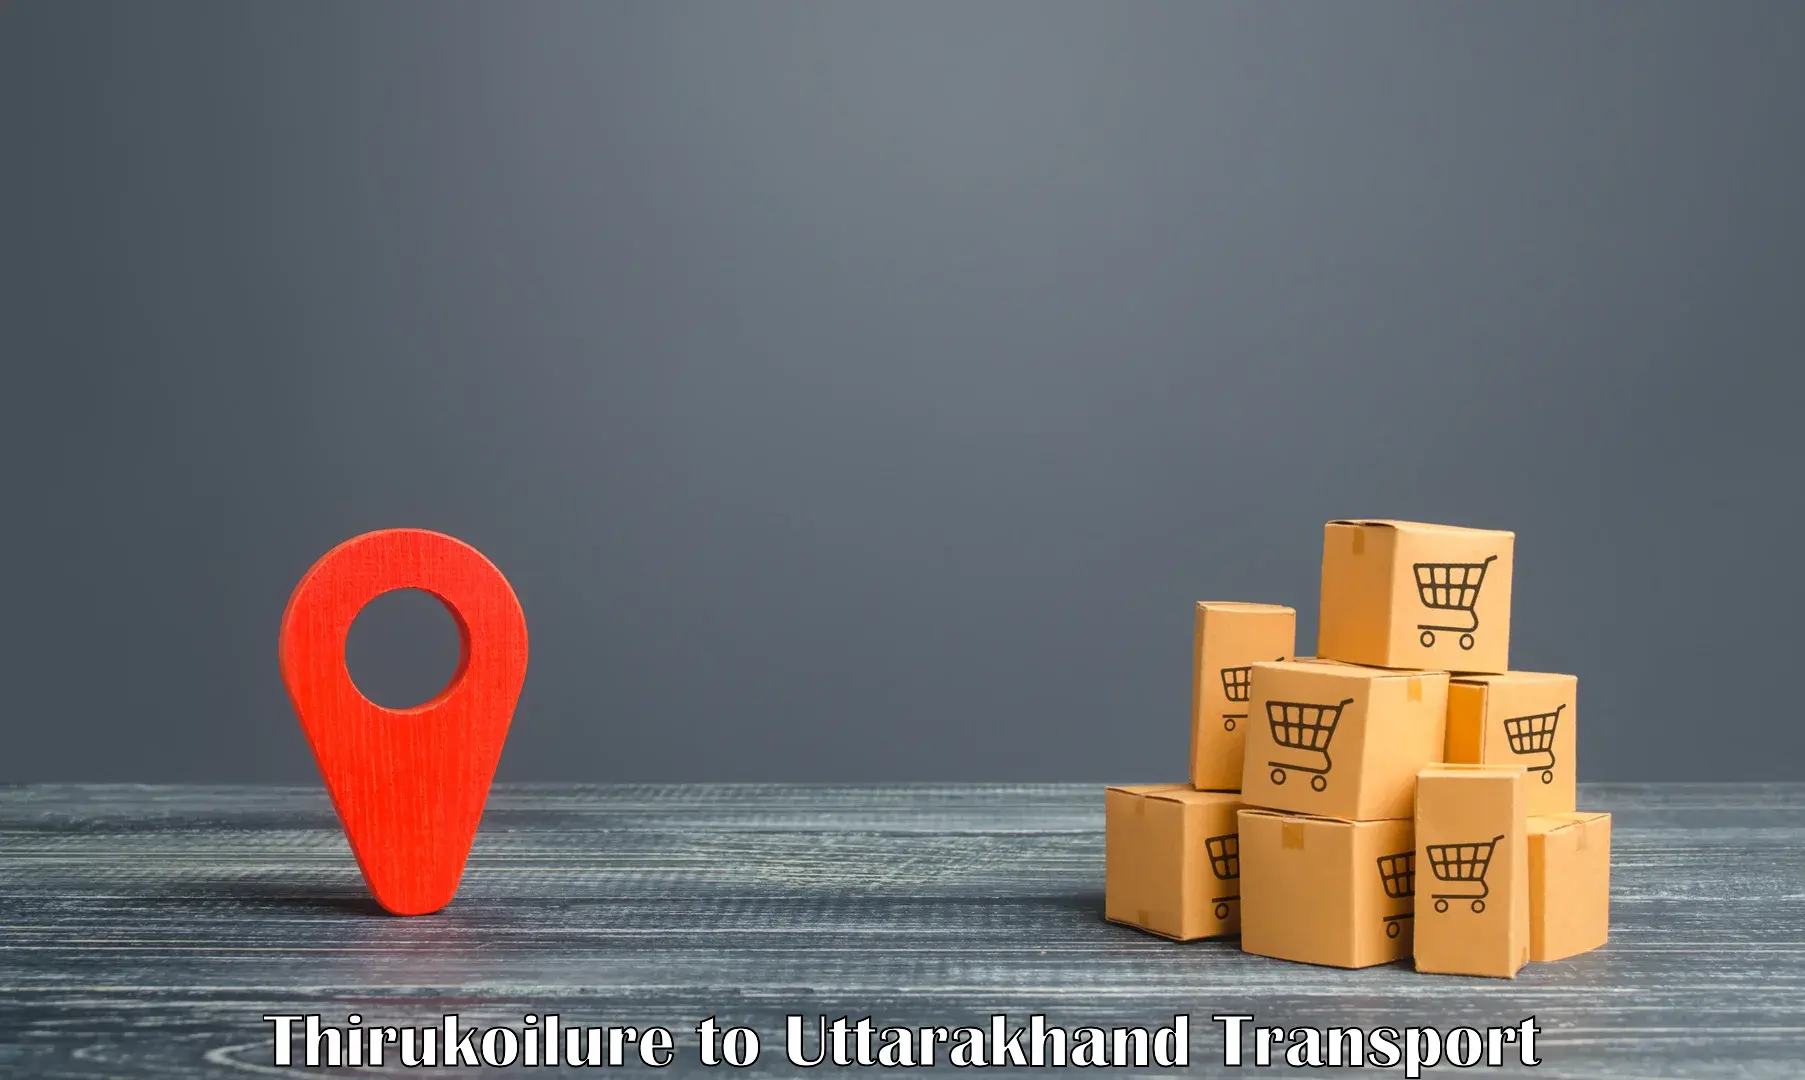 Air cargo transport services Thirukoilure to Haldwani